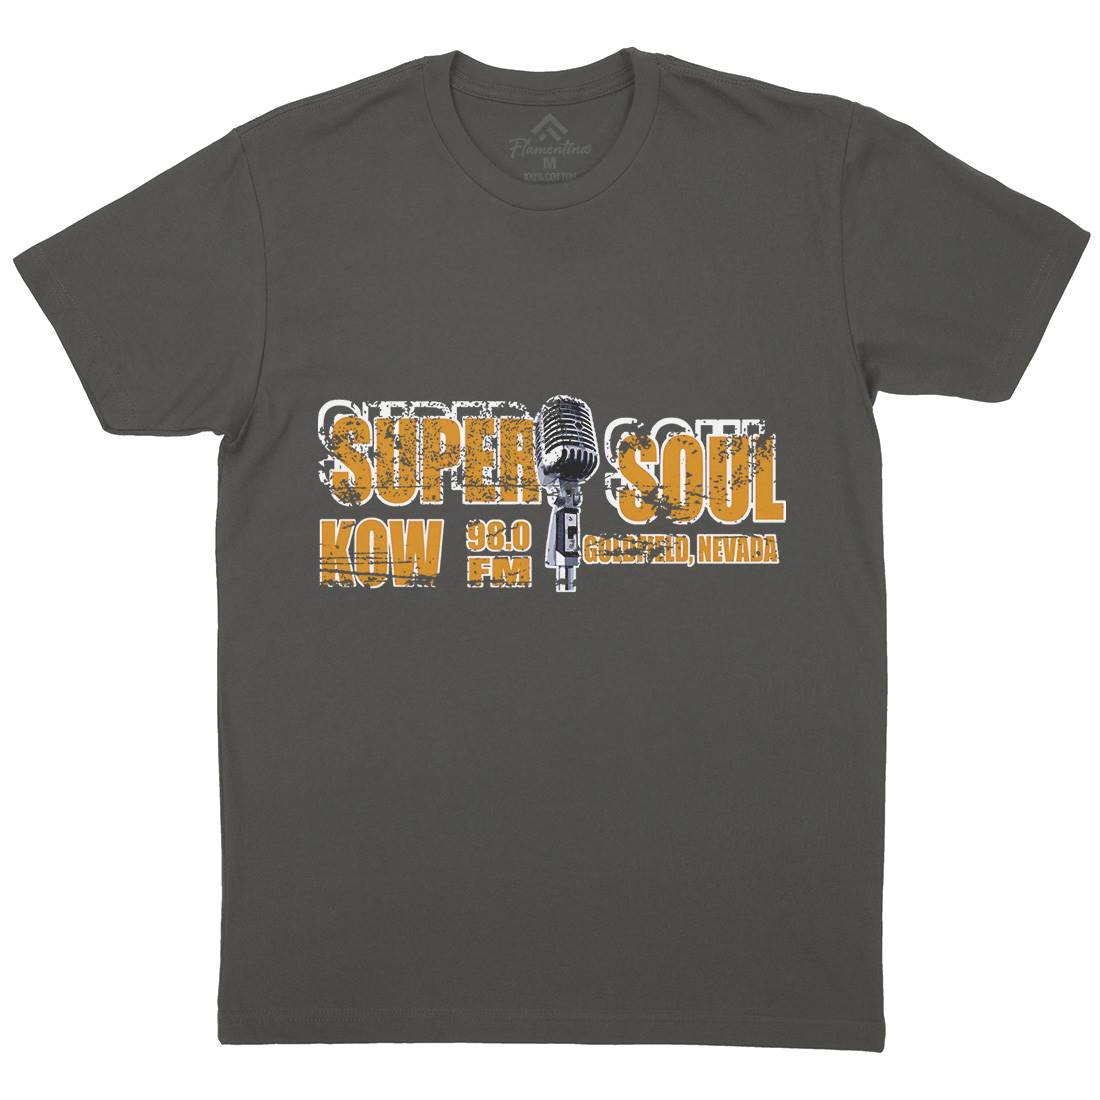 Super Soul Mens Crew Neck T-Shirt Music D392